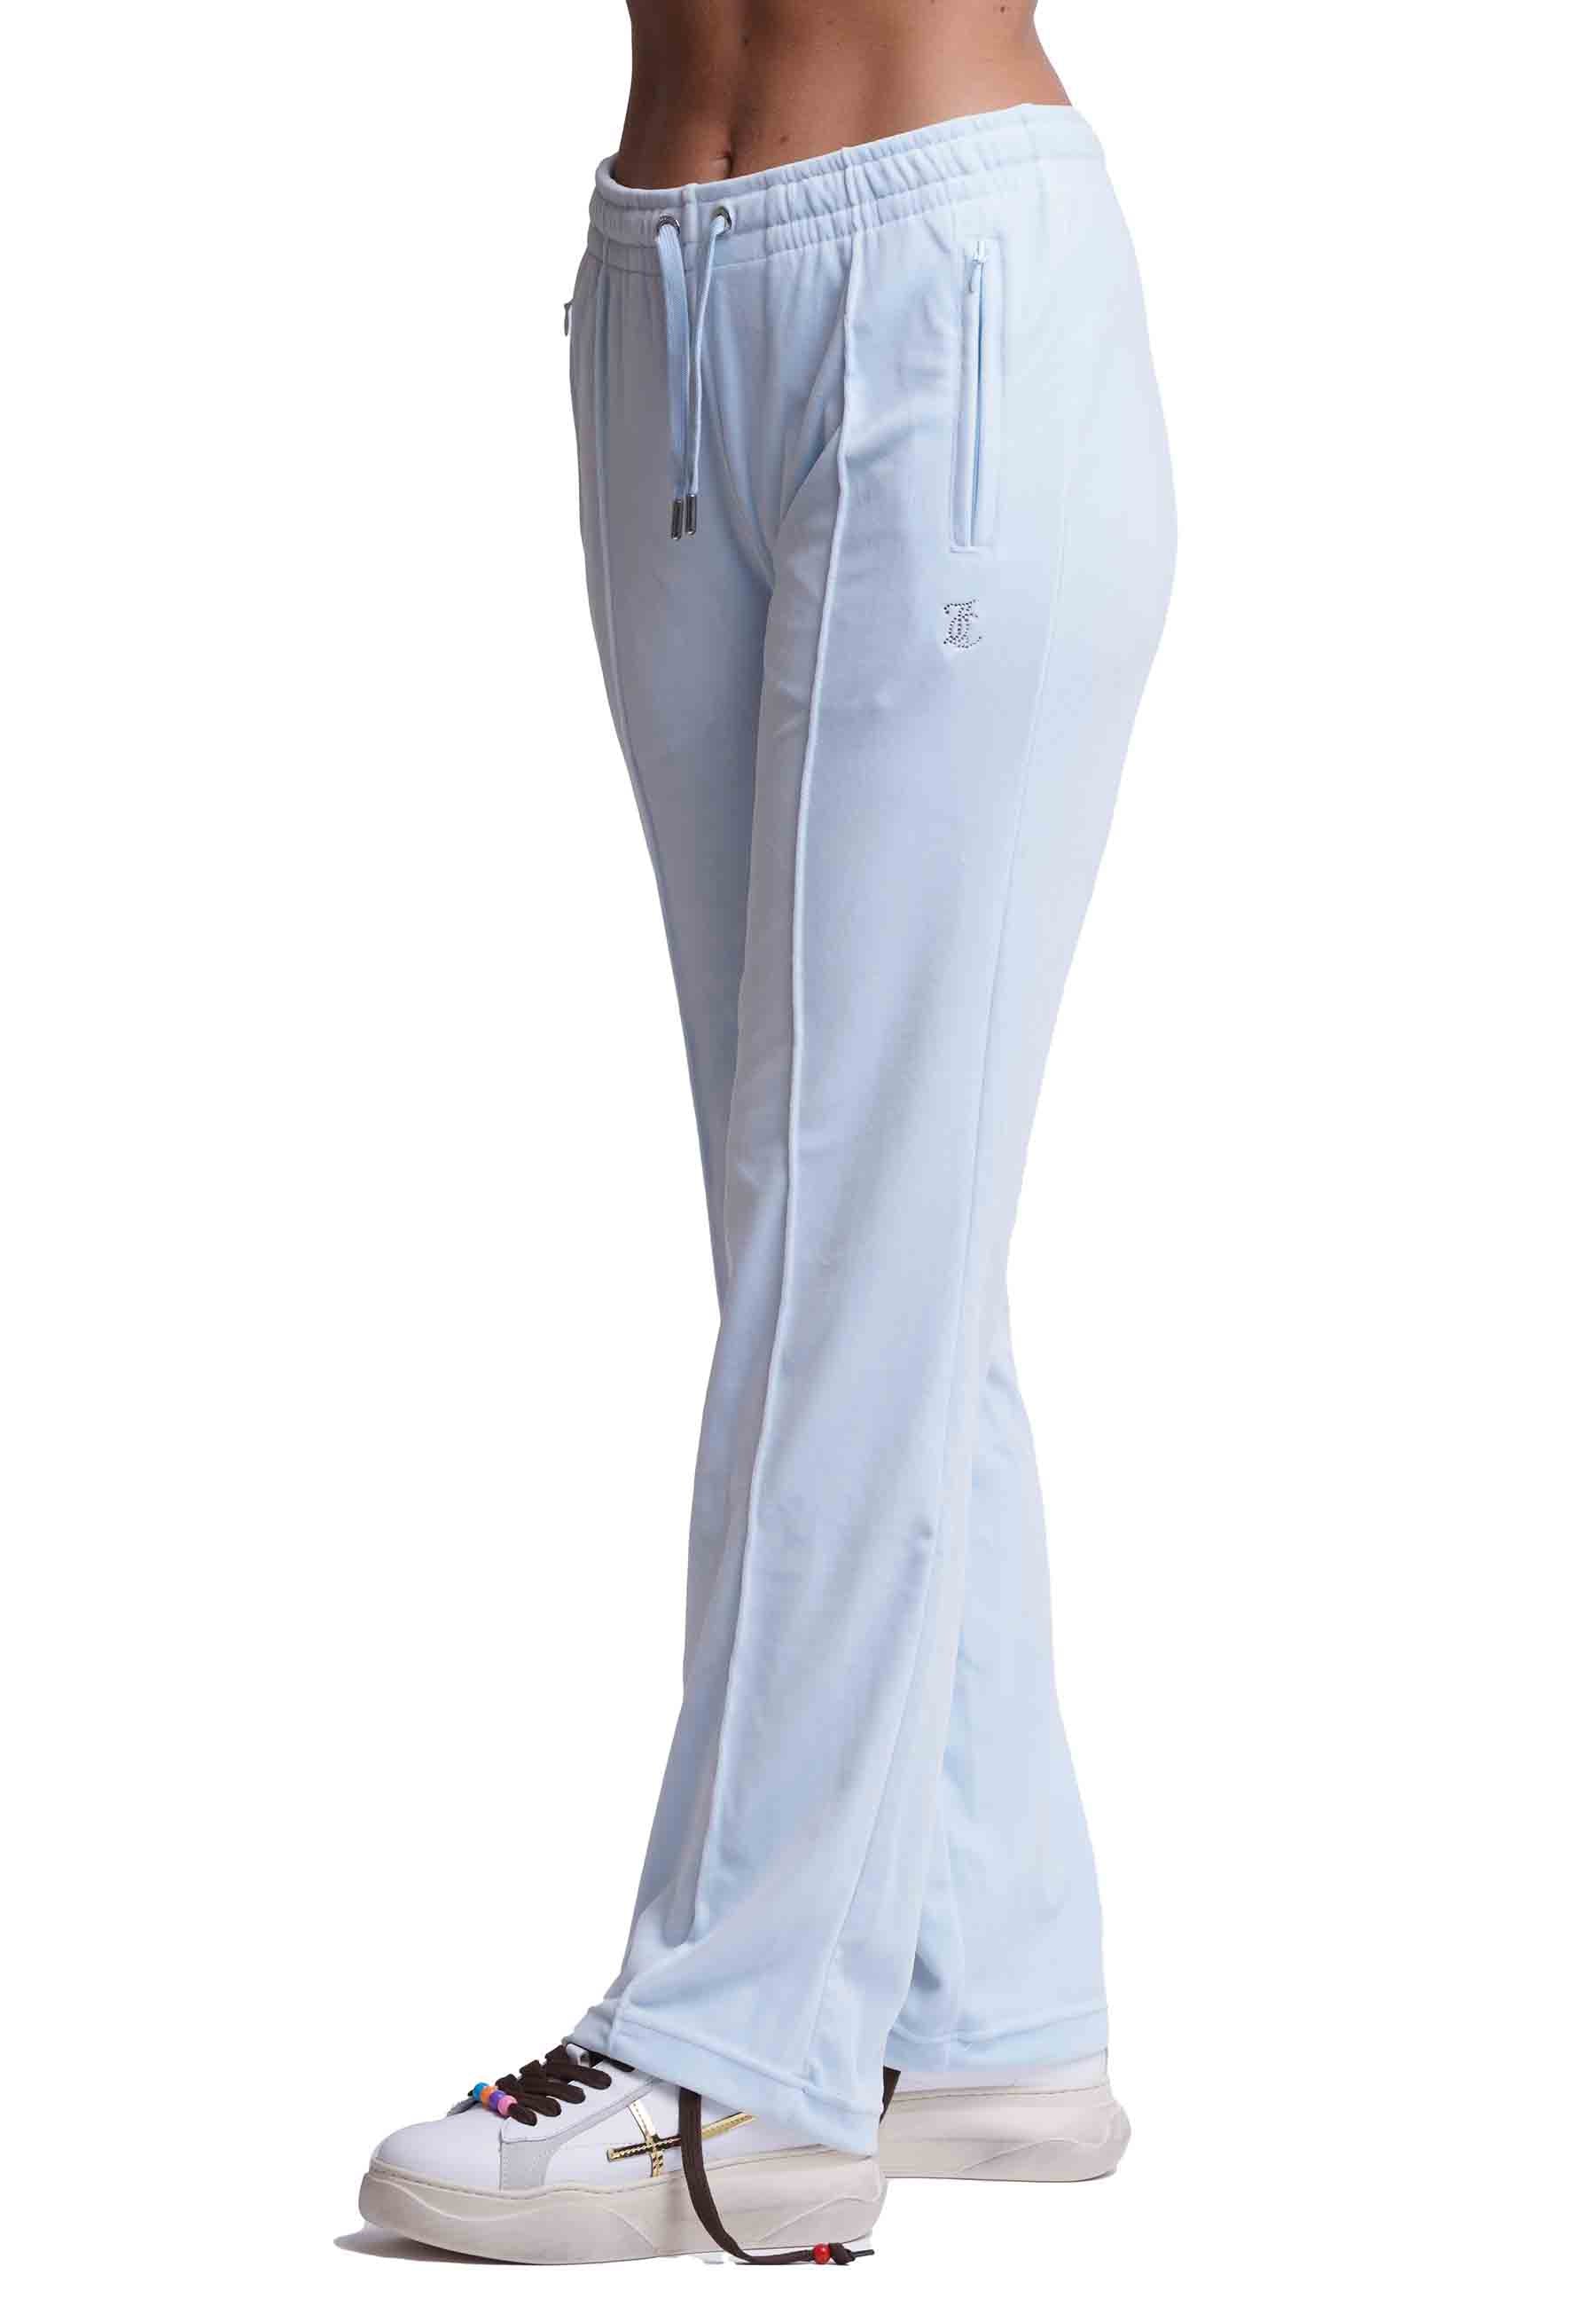 Diamond women's trousers in light blue velvet with rhinestones